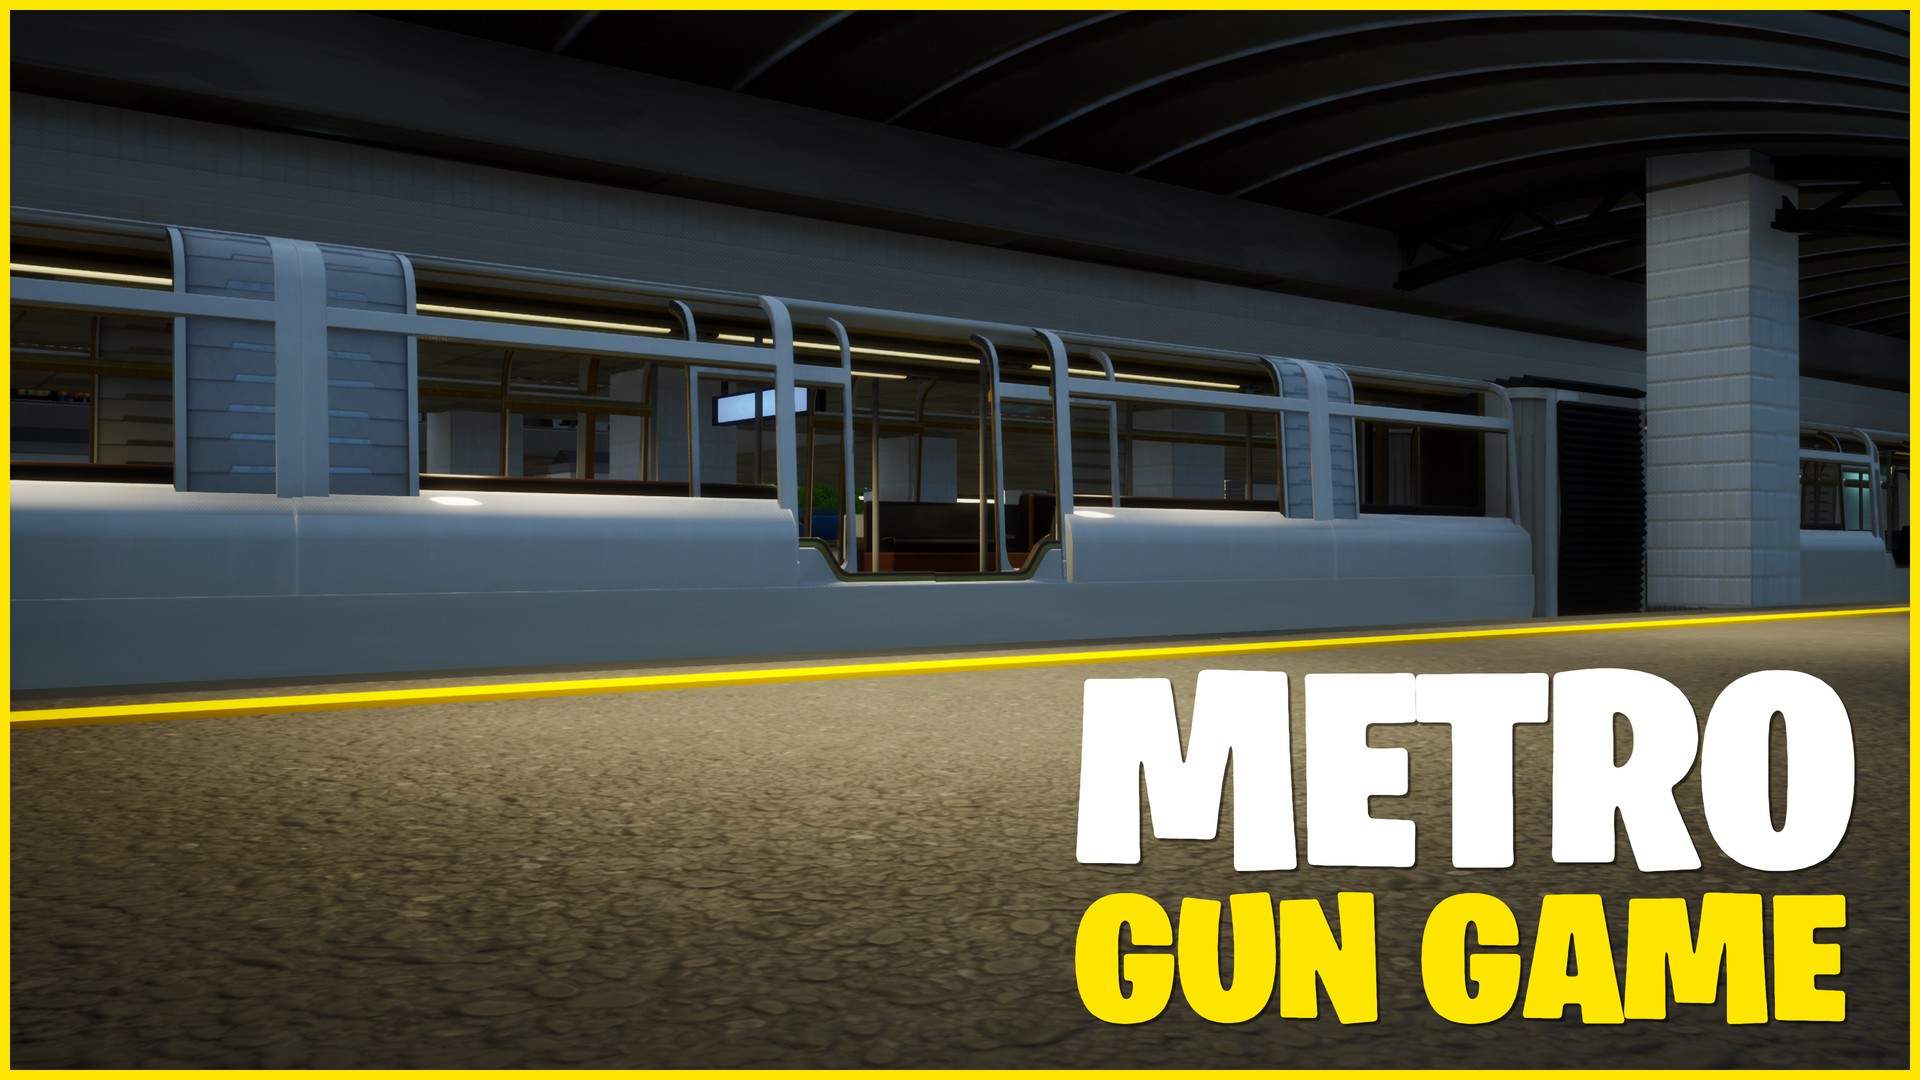 METRO: GUN GAME